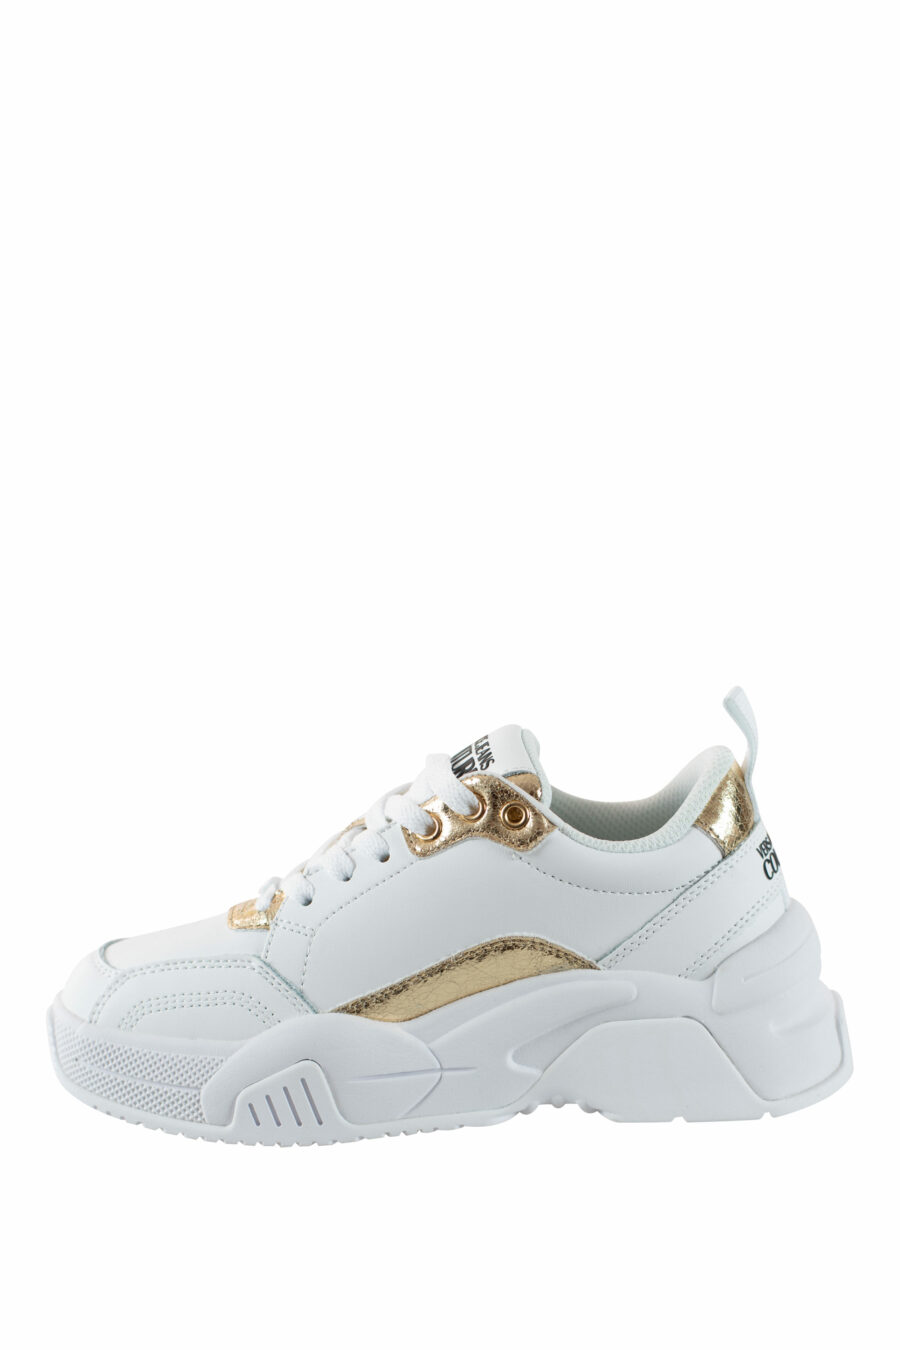 Zapatillas blancas con dorado "stargaze" - IMG 4501